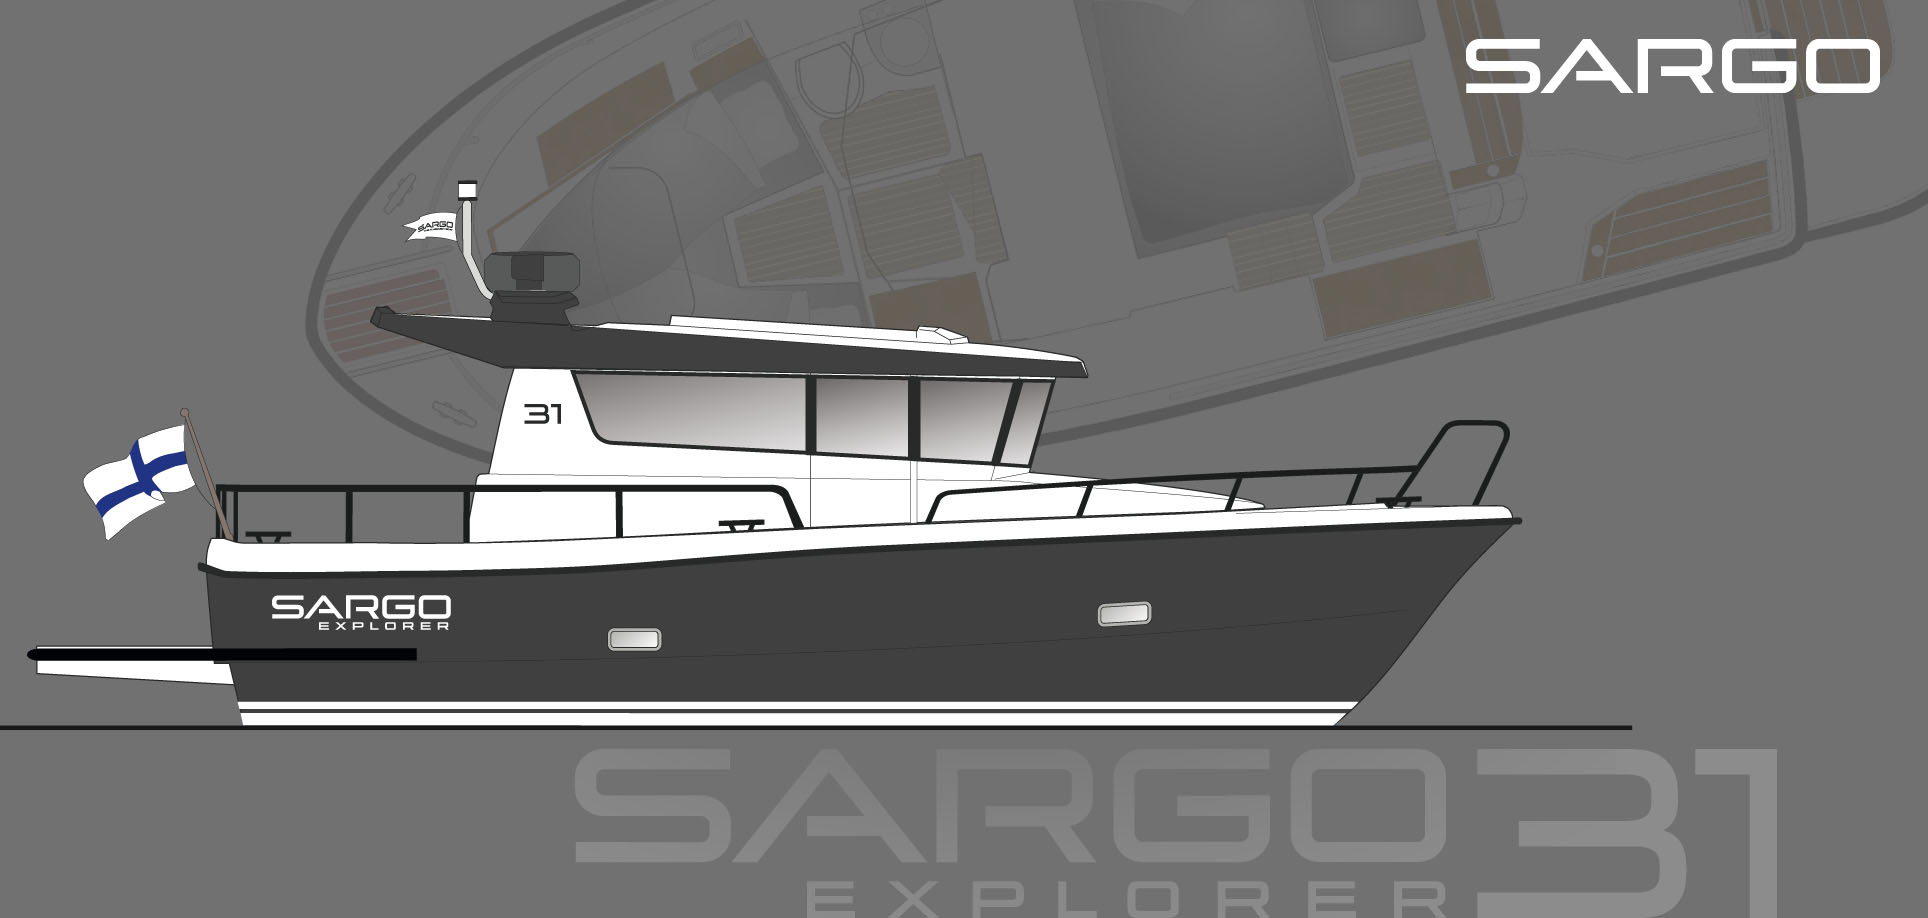 Sargo Explorer 31